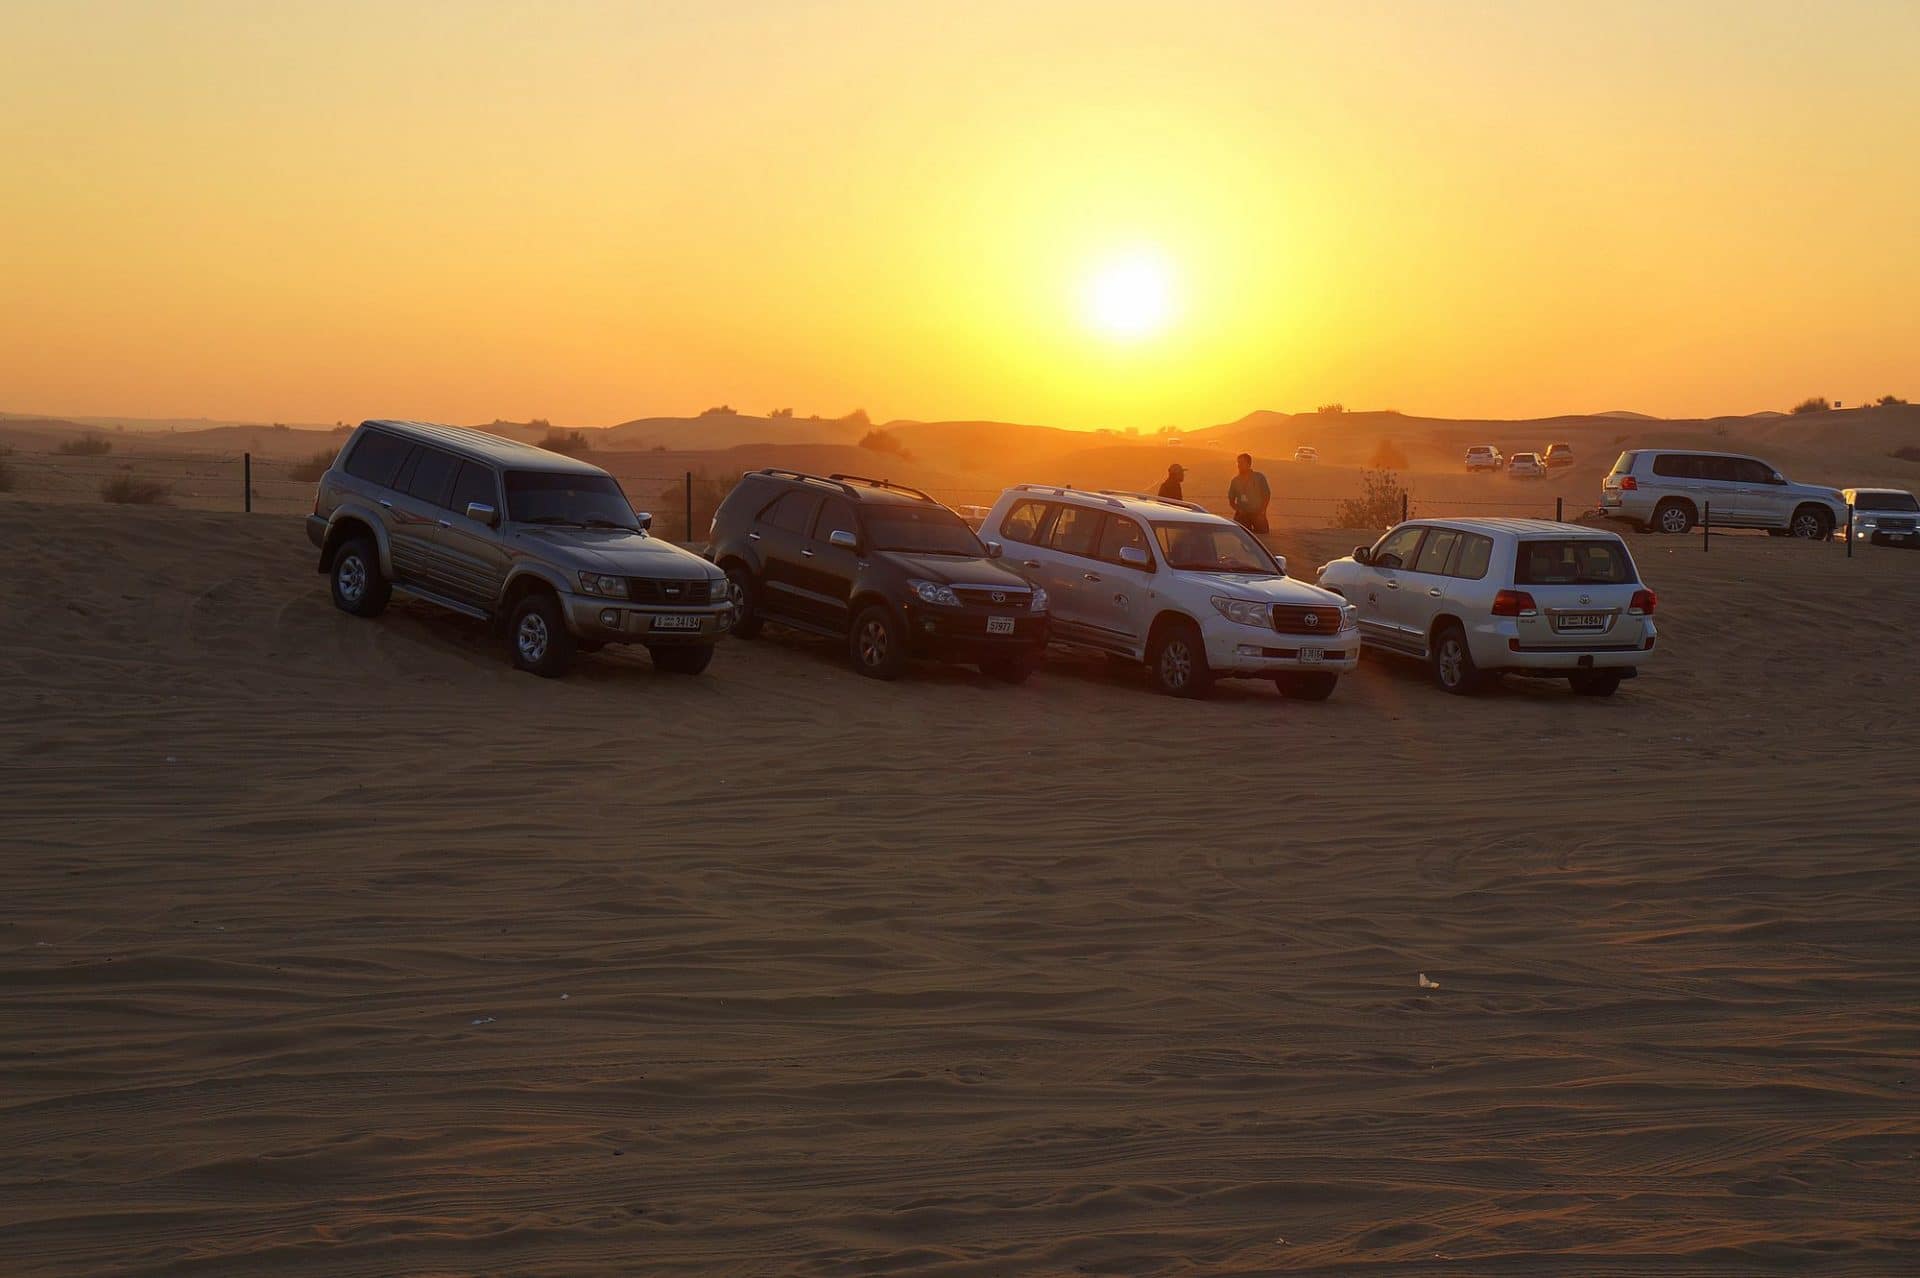 Safari deserto Dubai avventura dune